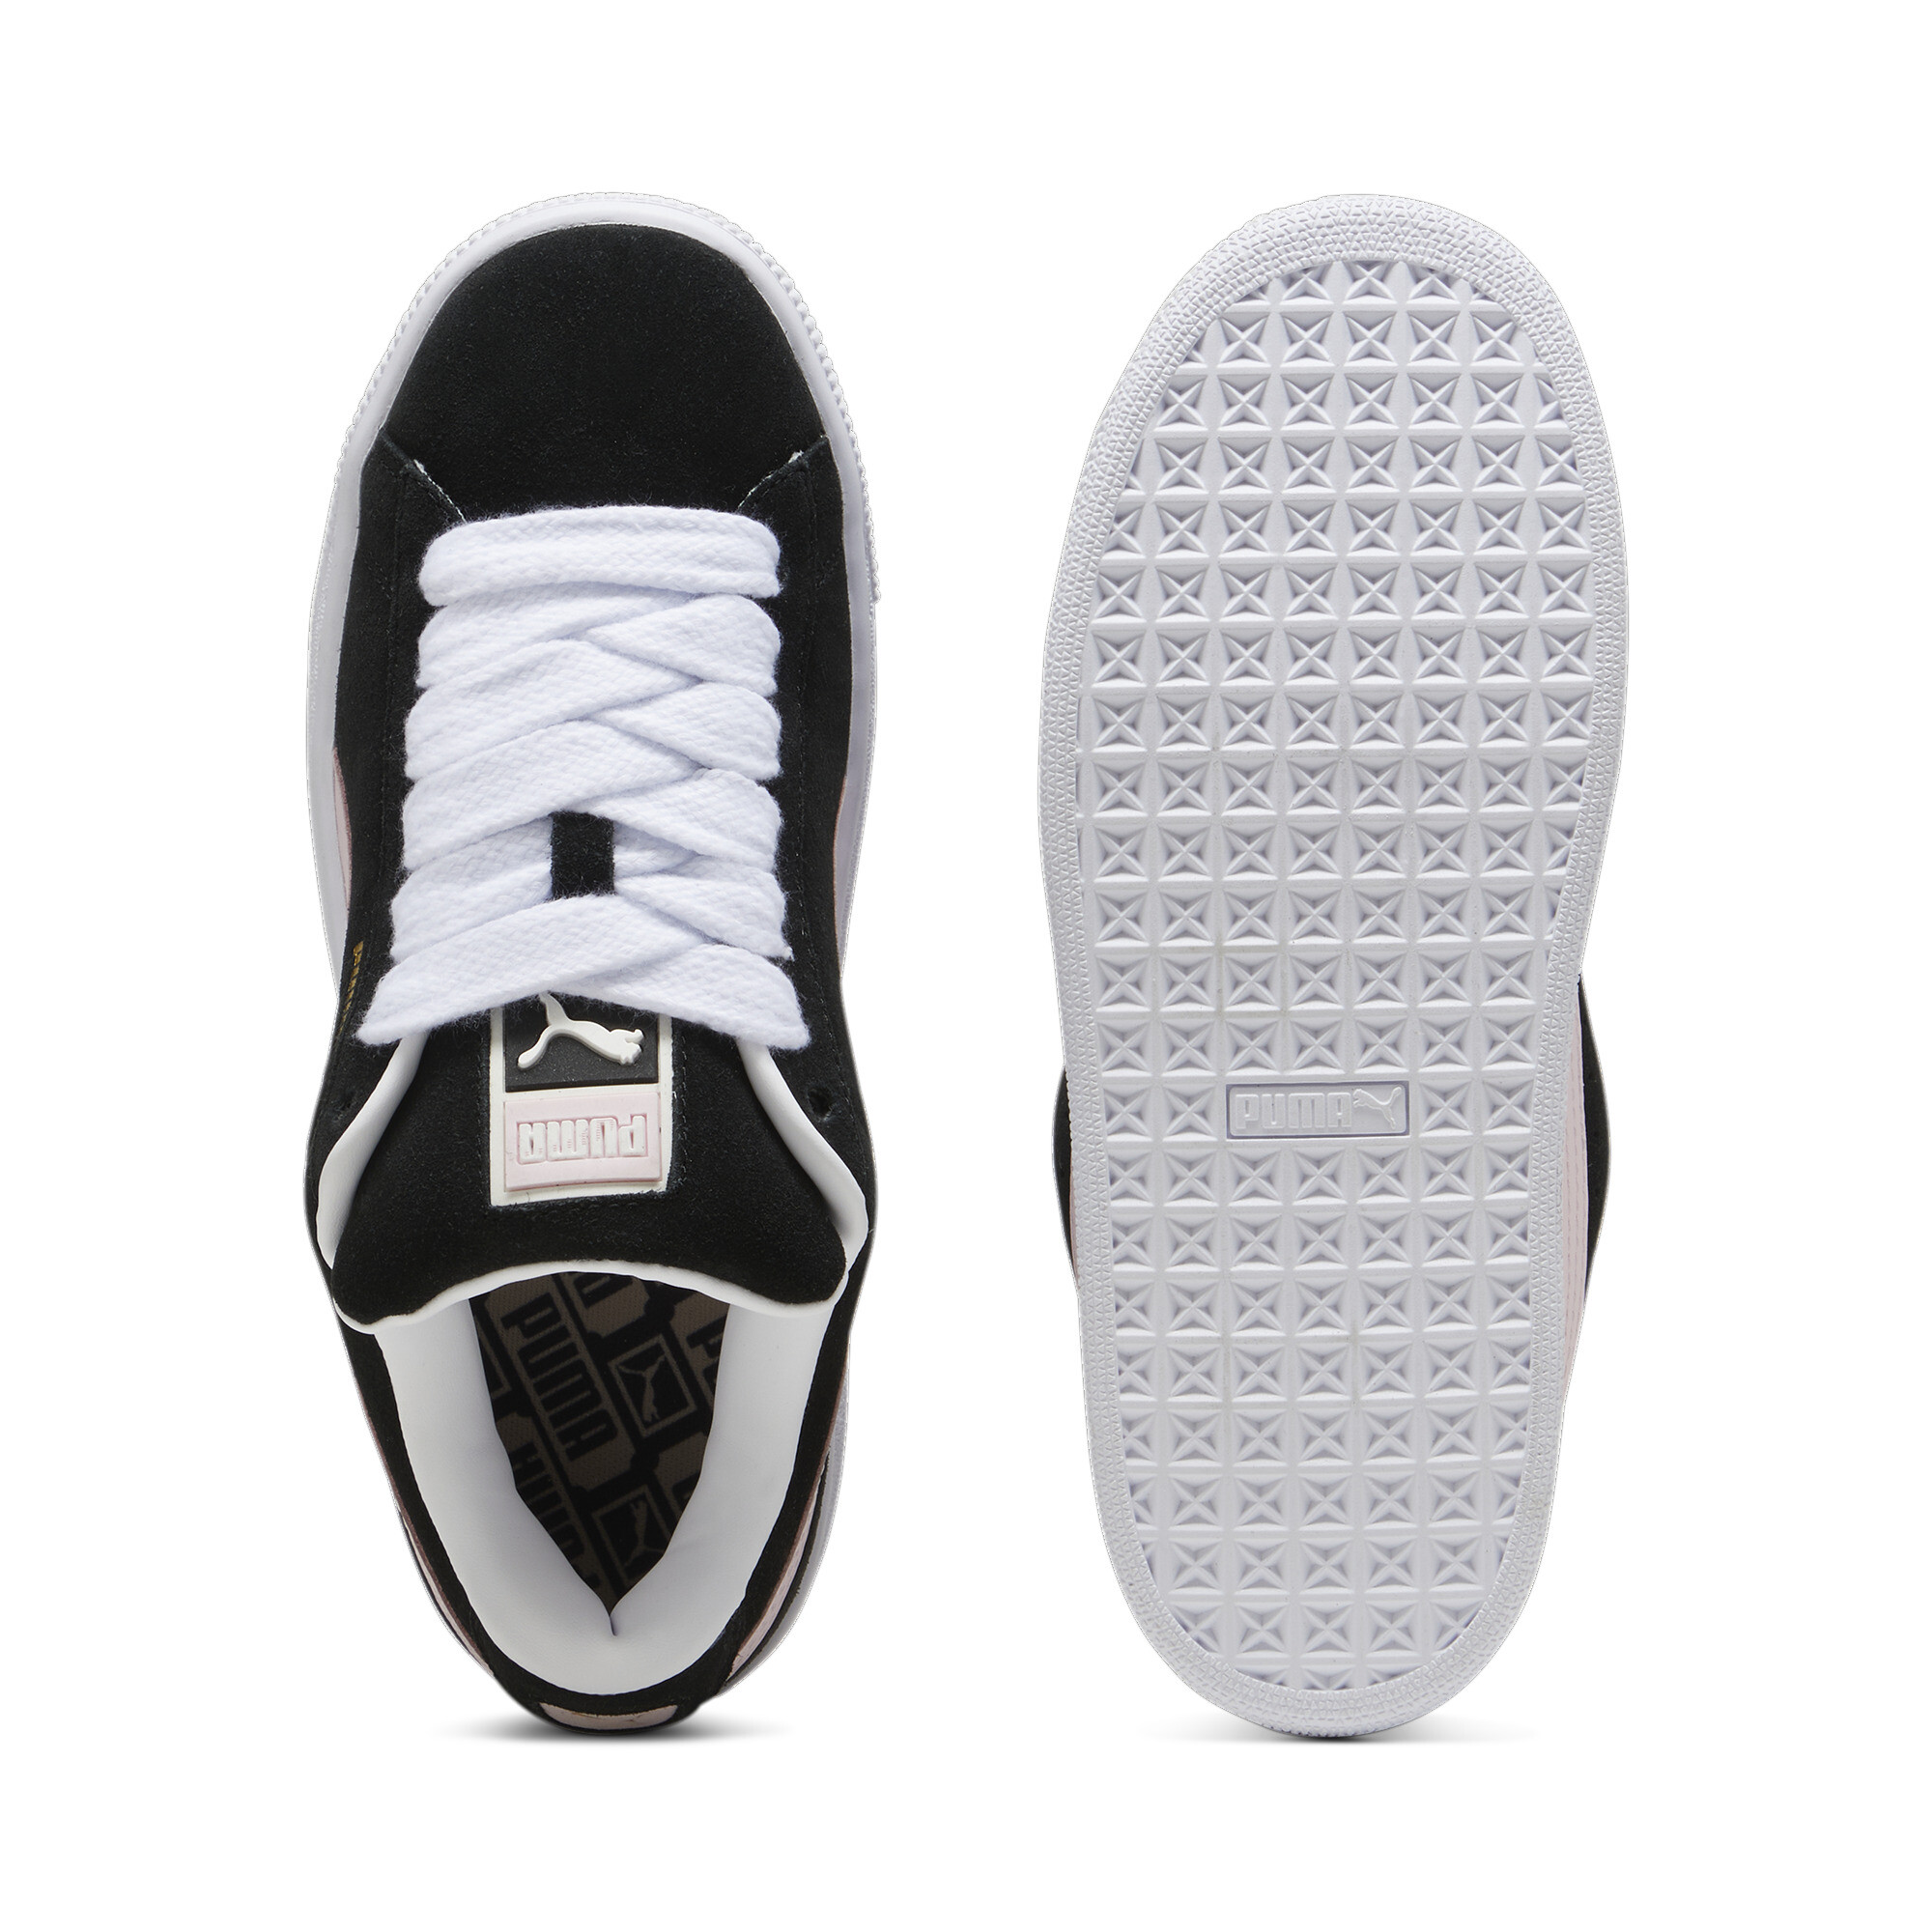 Puma Suede XL Sneakers Unisex, Black, Size 46, Shoes